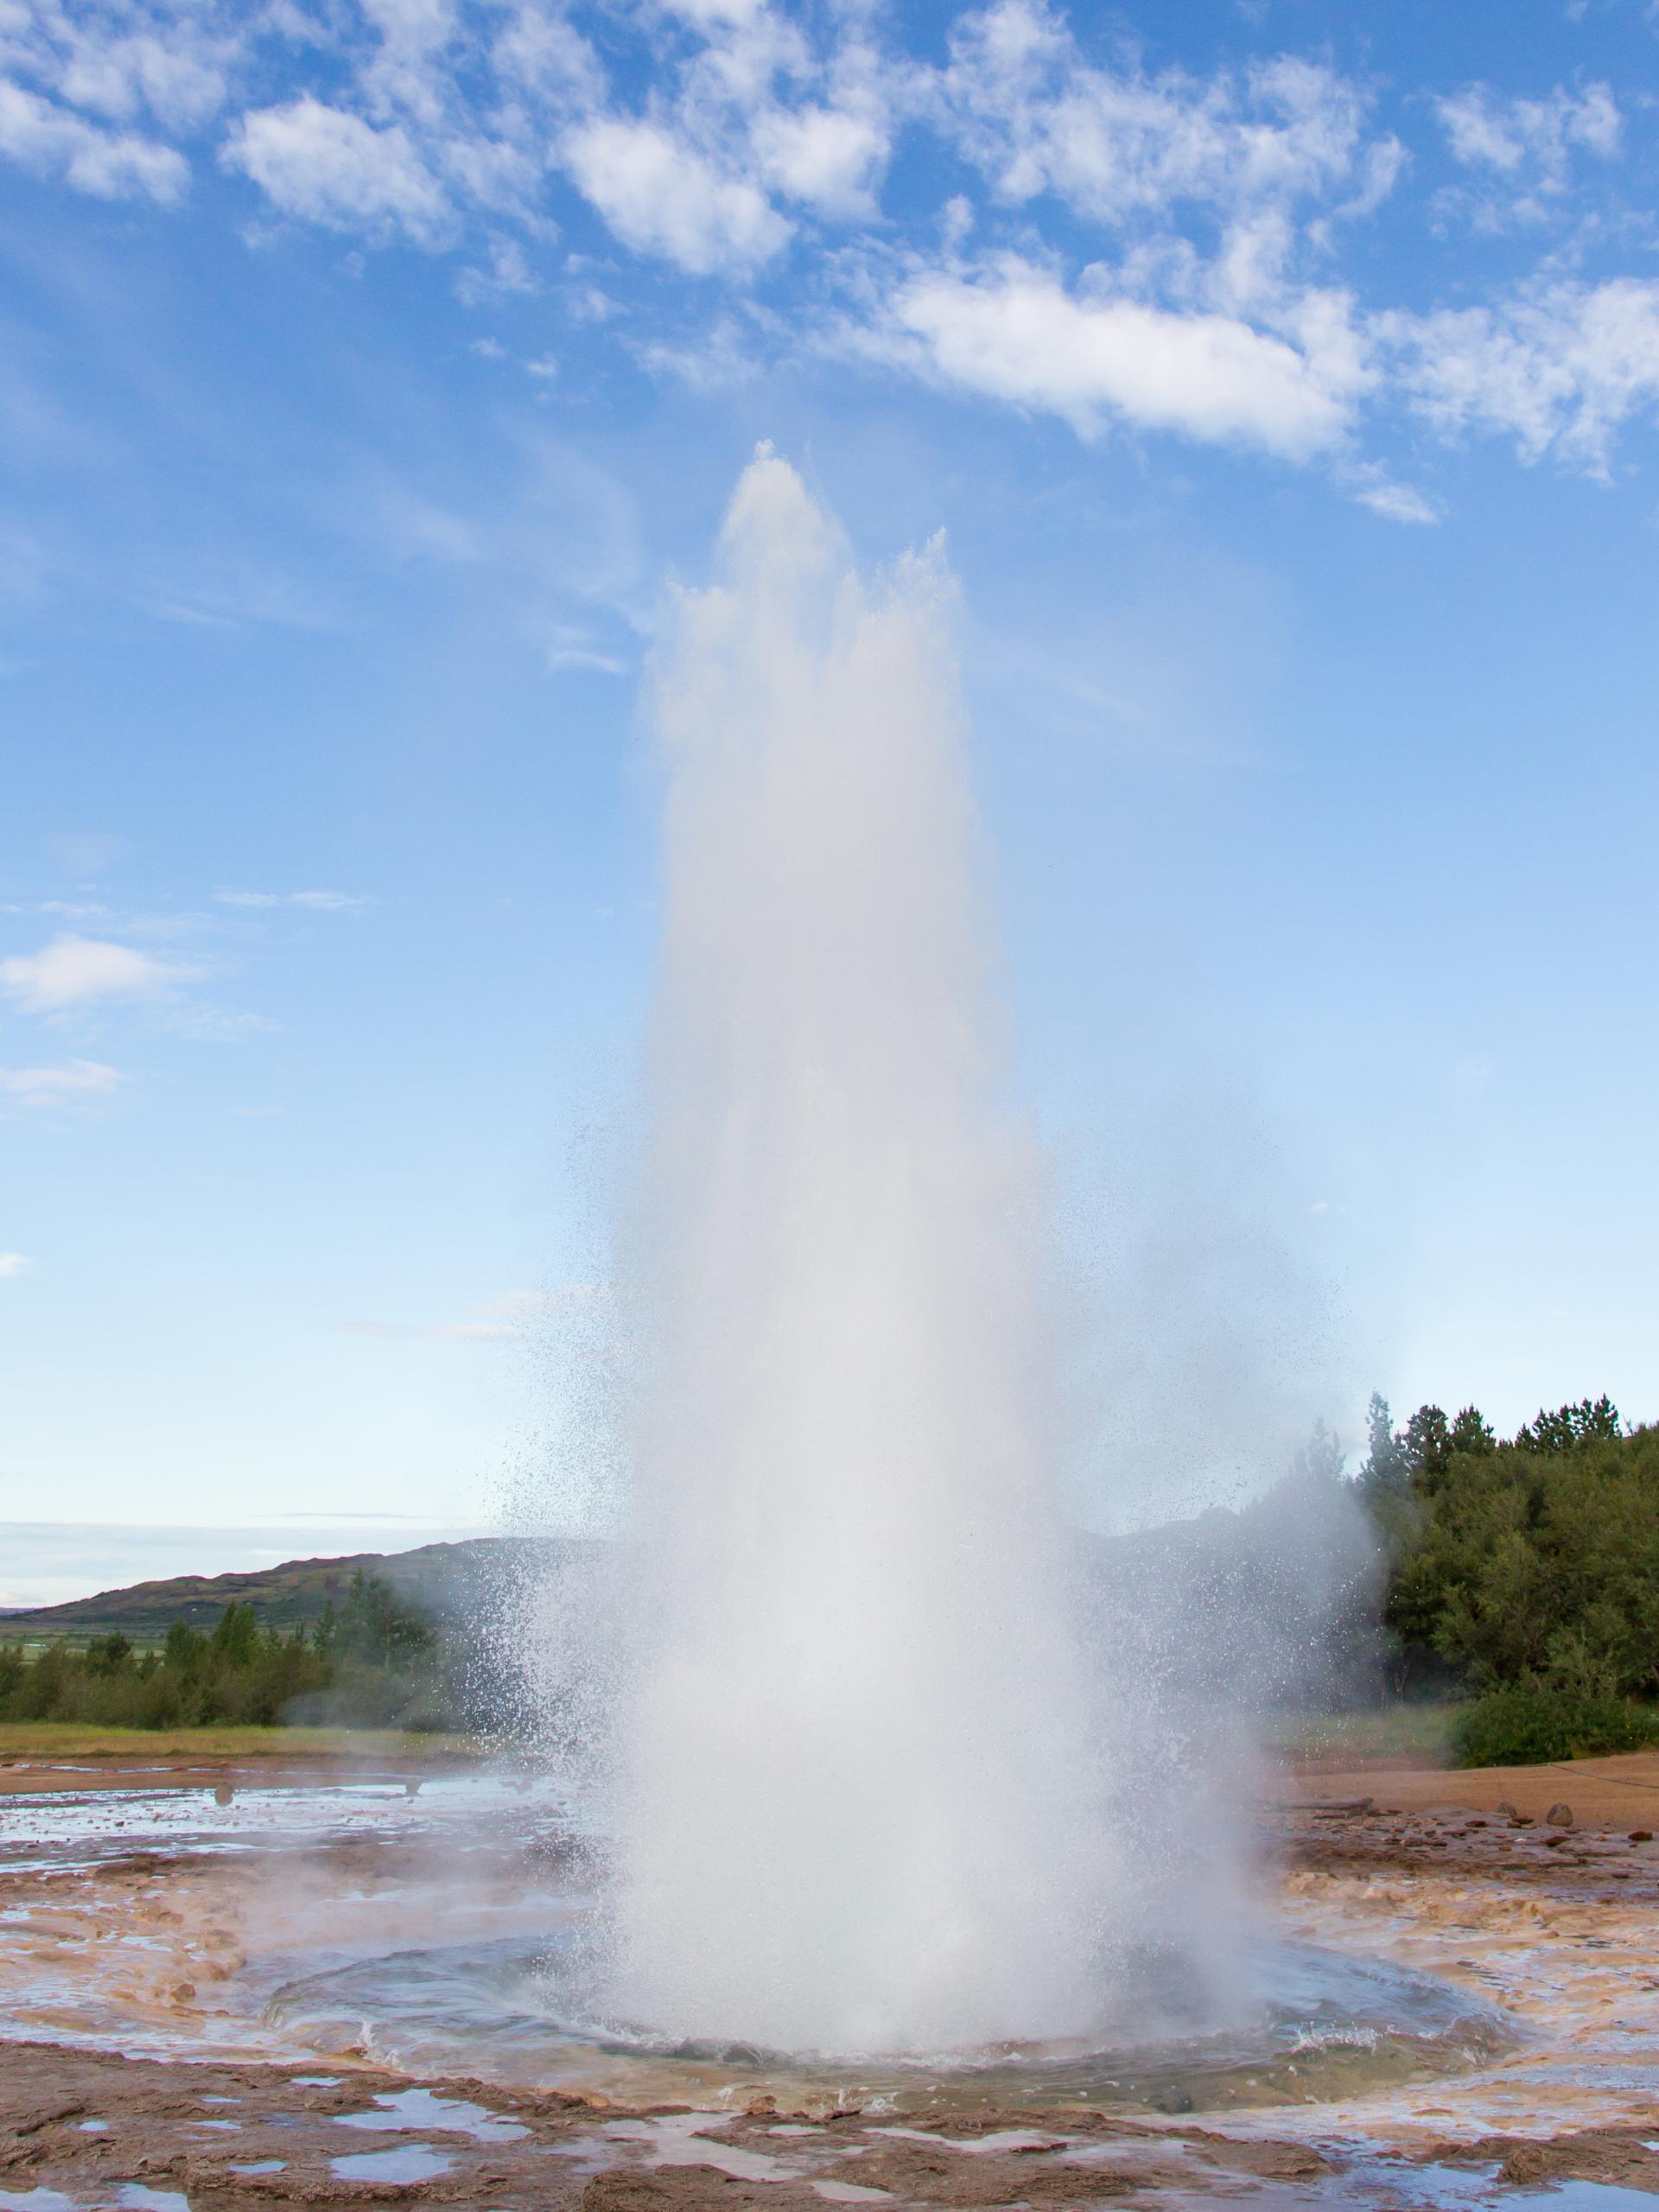 Le geyser de geysir projettant de l'eau brulante